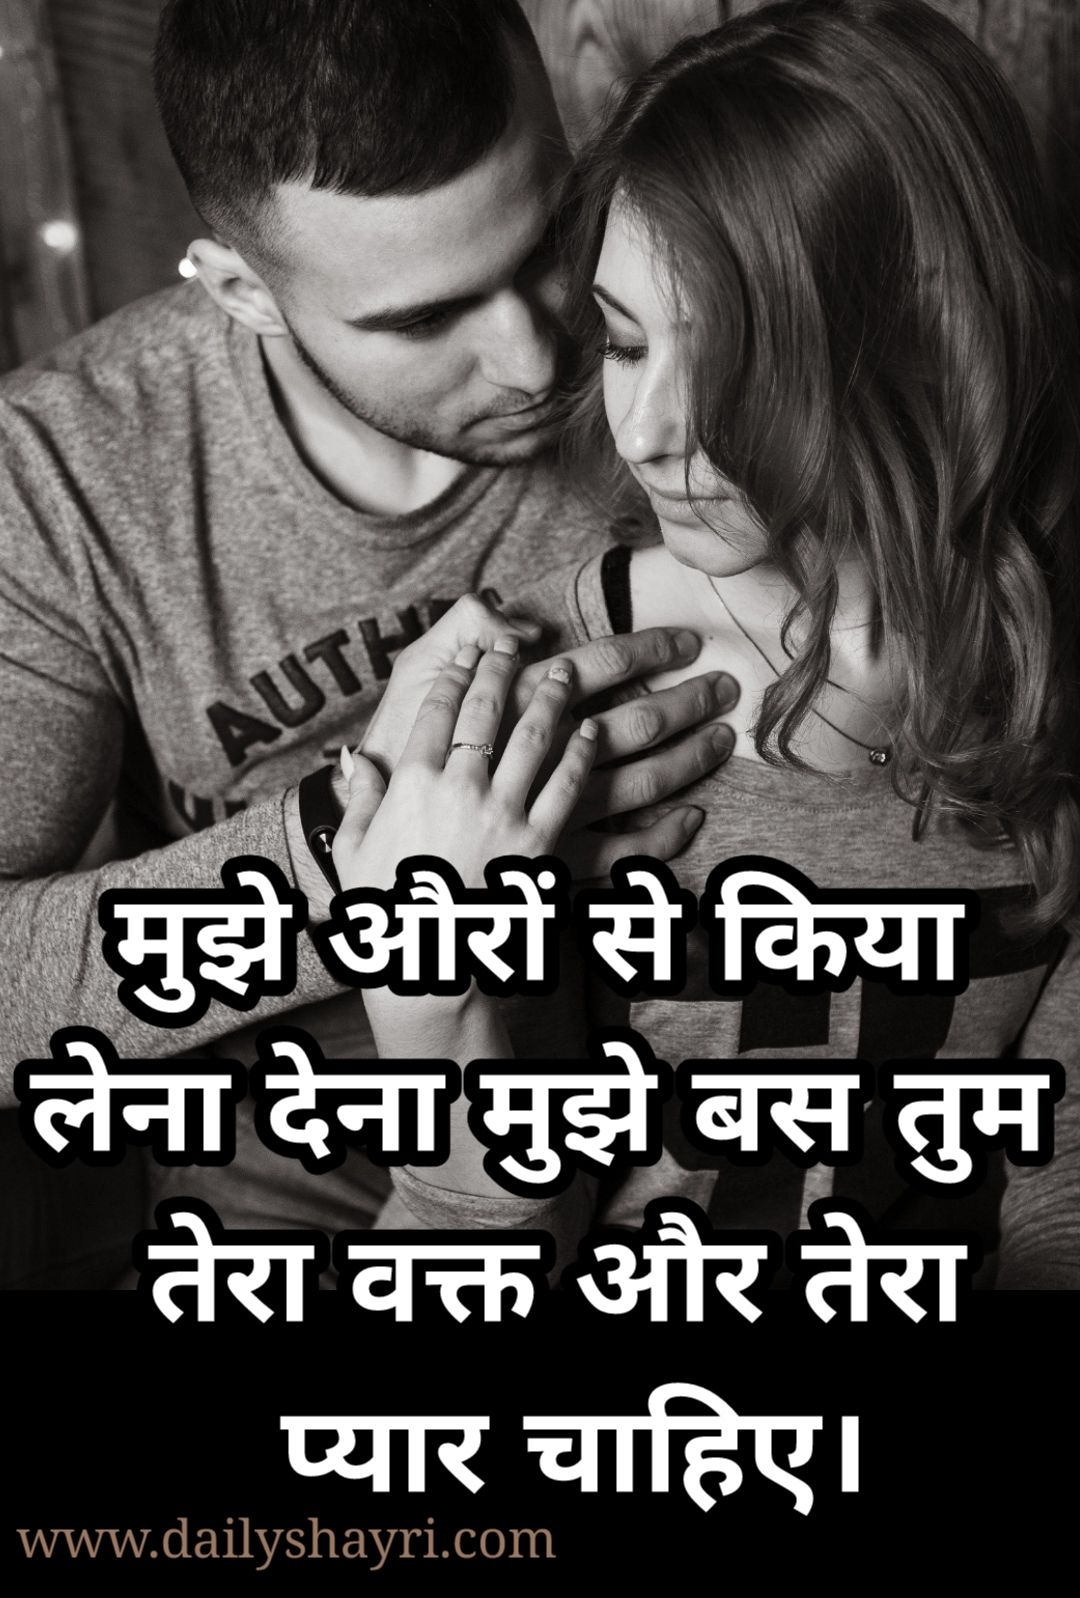 Love Quotes For Him In Hindi Shayari